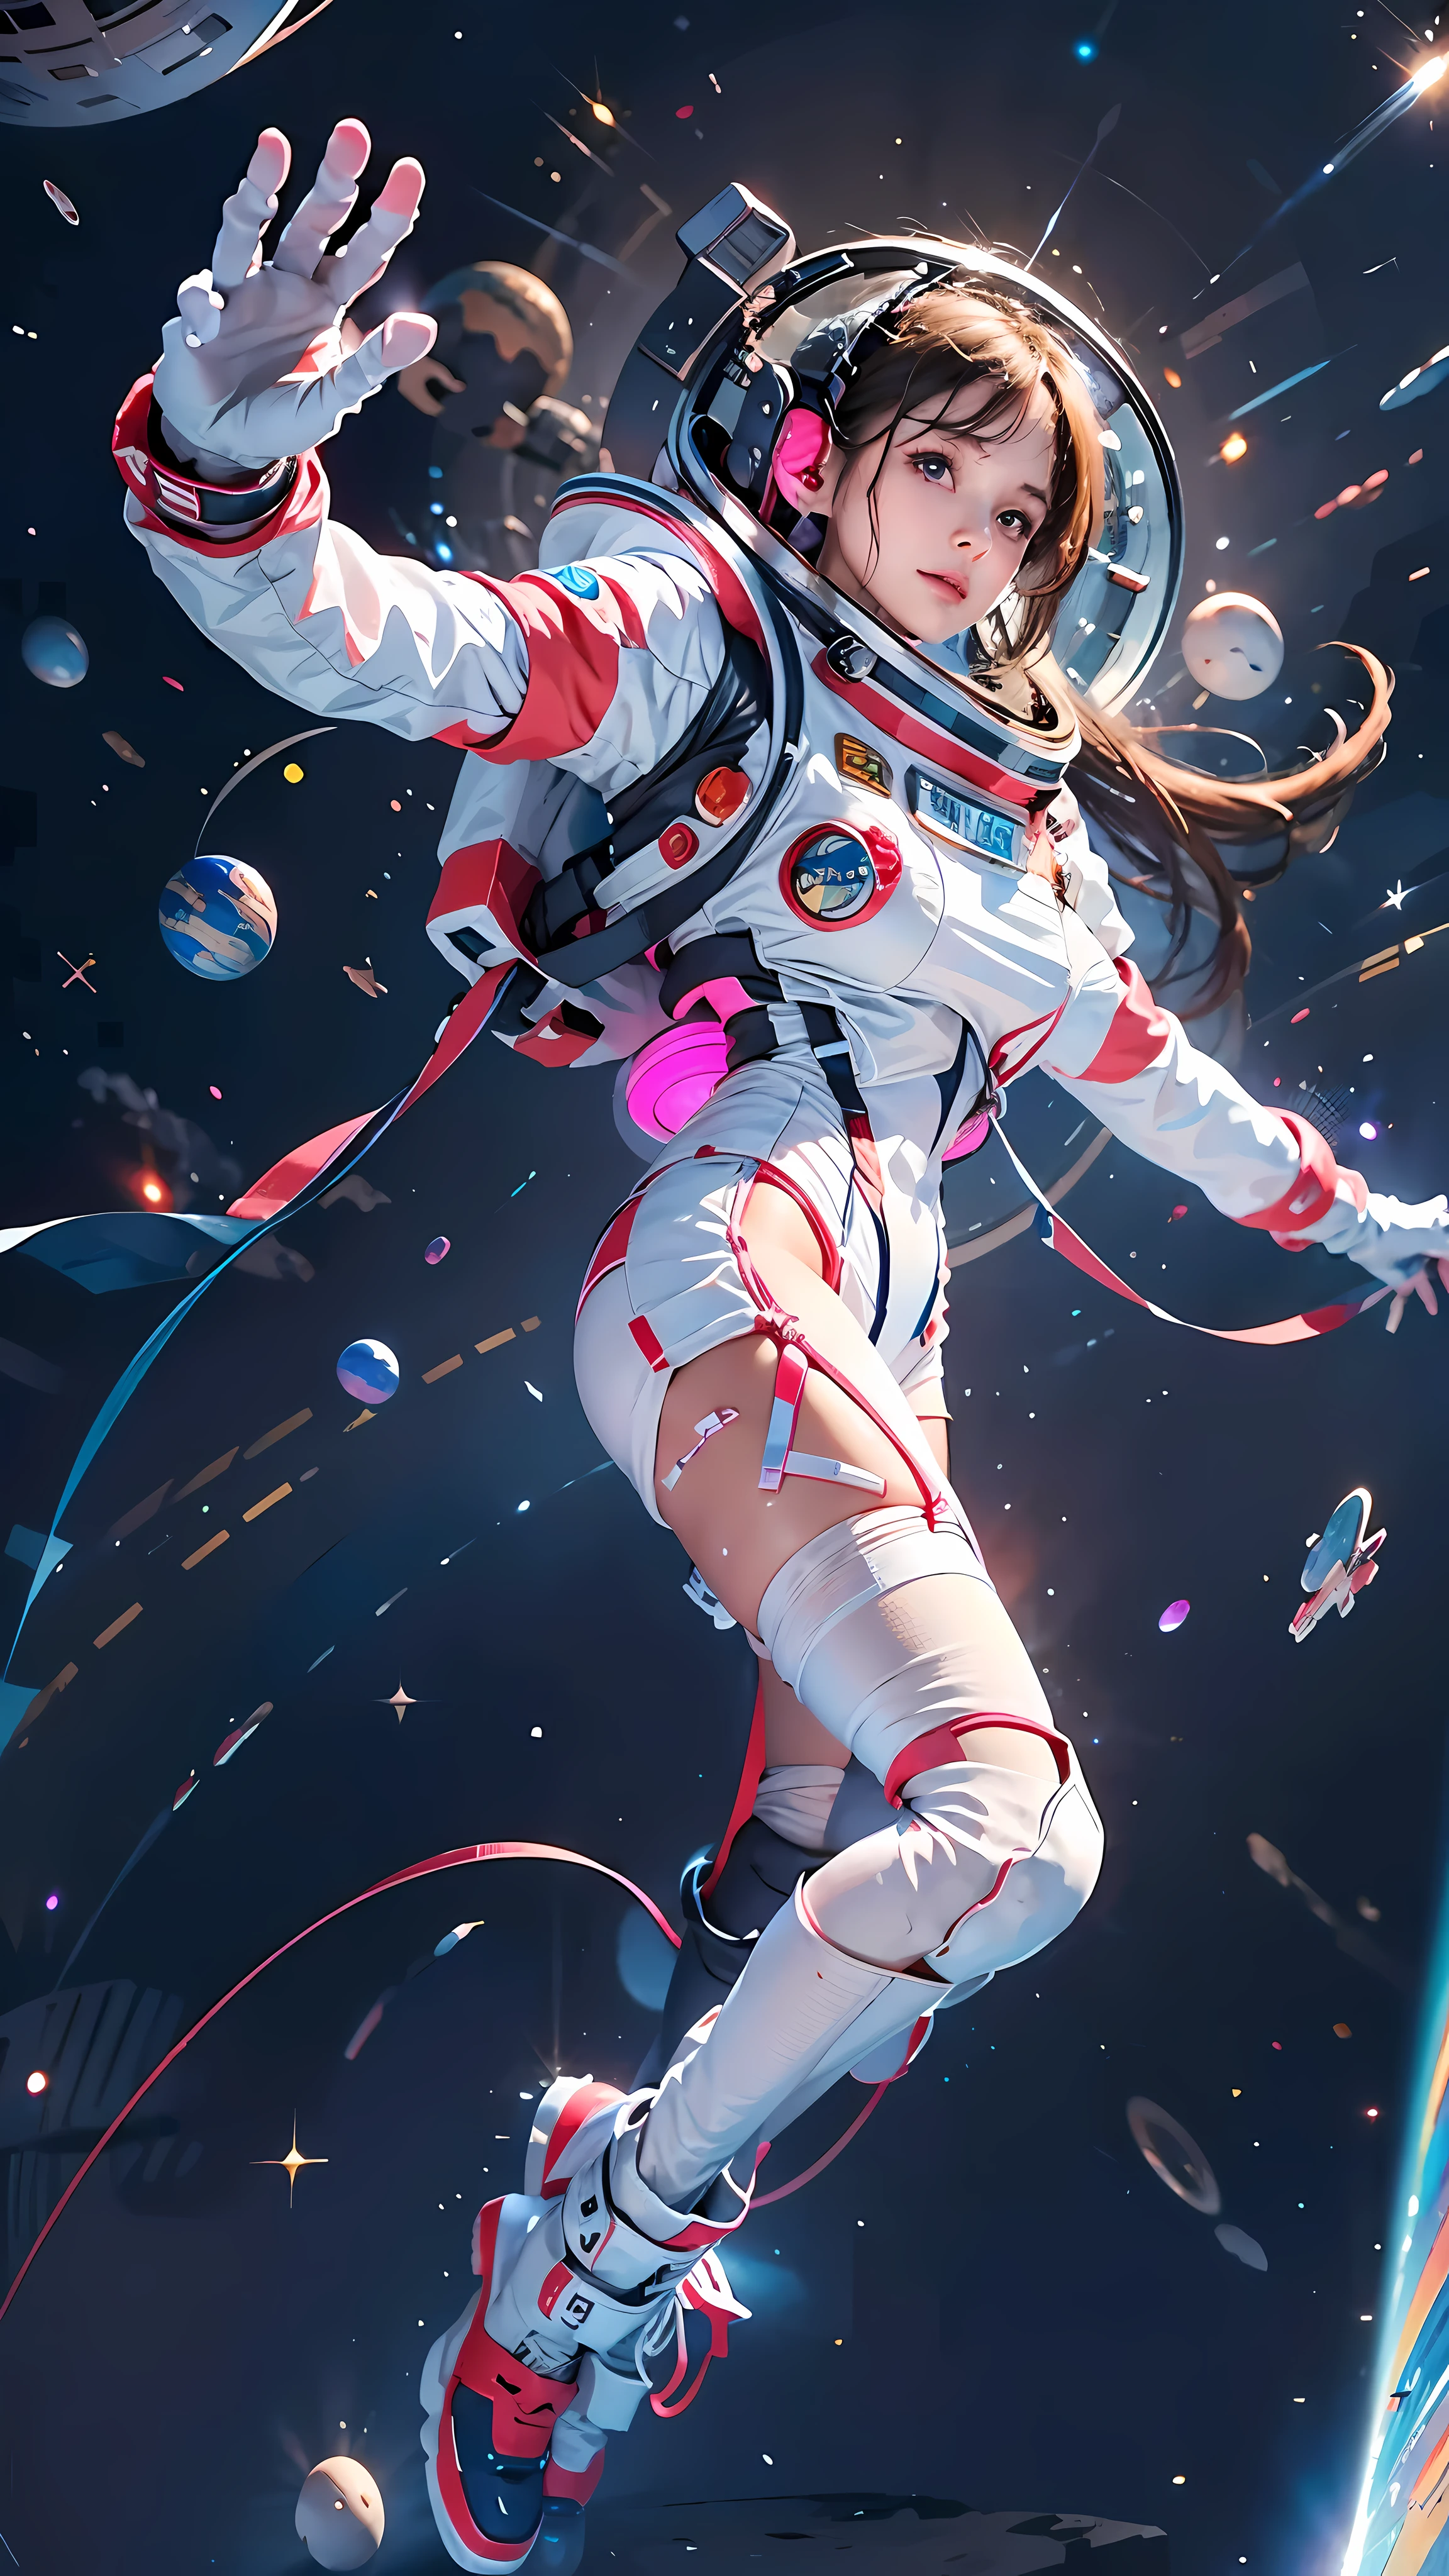 高分辨率, 极其详细, 1女孩, 穿着宇航服, 从上方看, 宇宙空间, 漂浮的, 卫星, 跑步姿势, 看看观众, 闪闪发光的, 空间背景, 肉腿, 白色丝袜, 全身照, (杰作:1.4), 8千